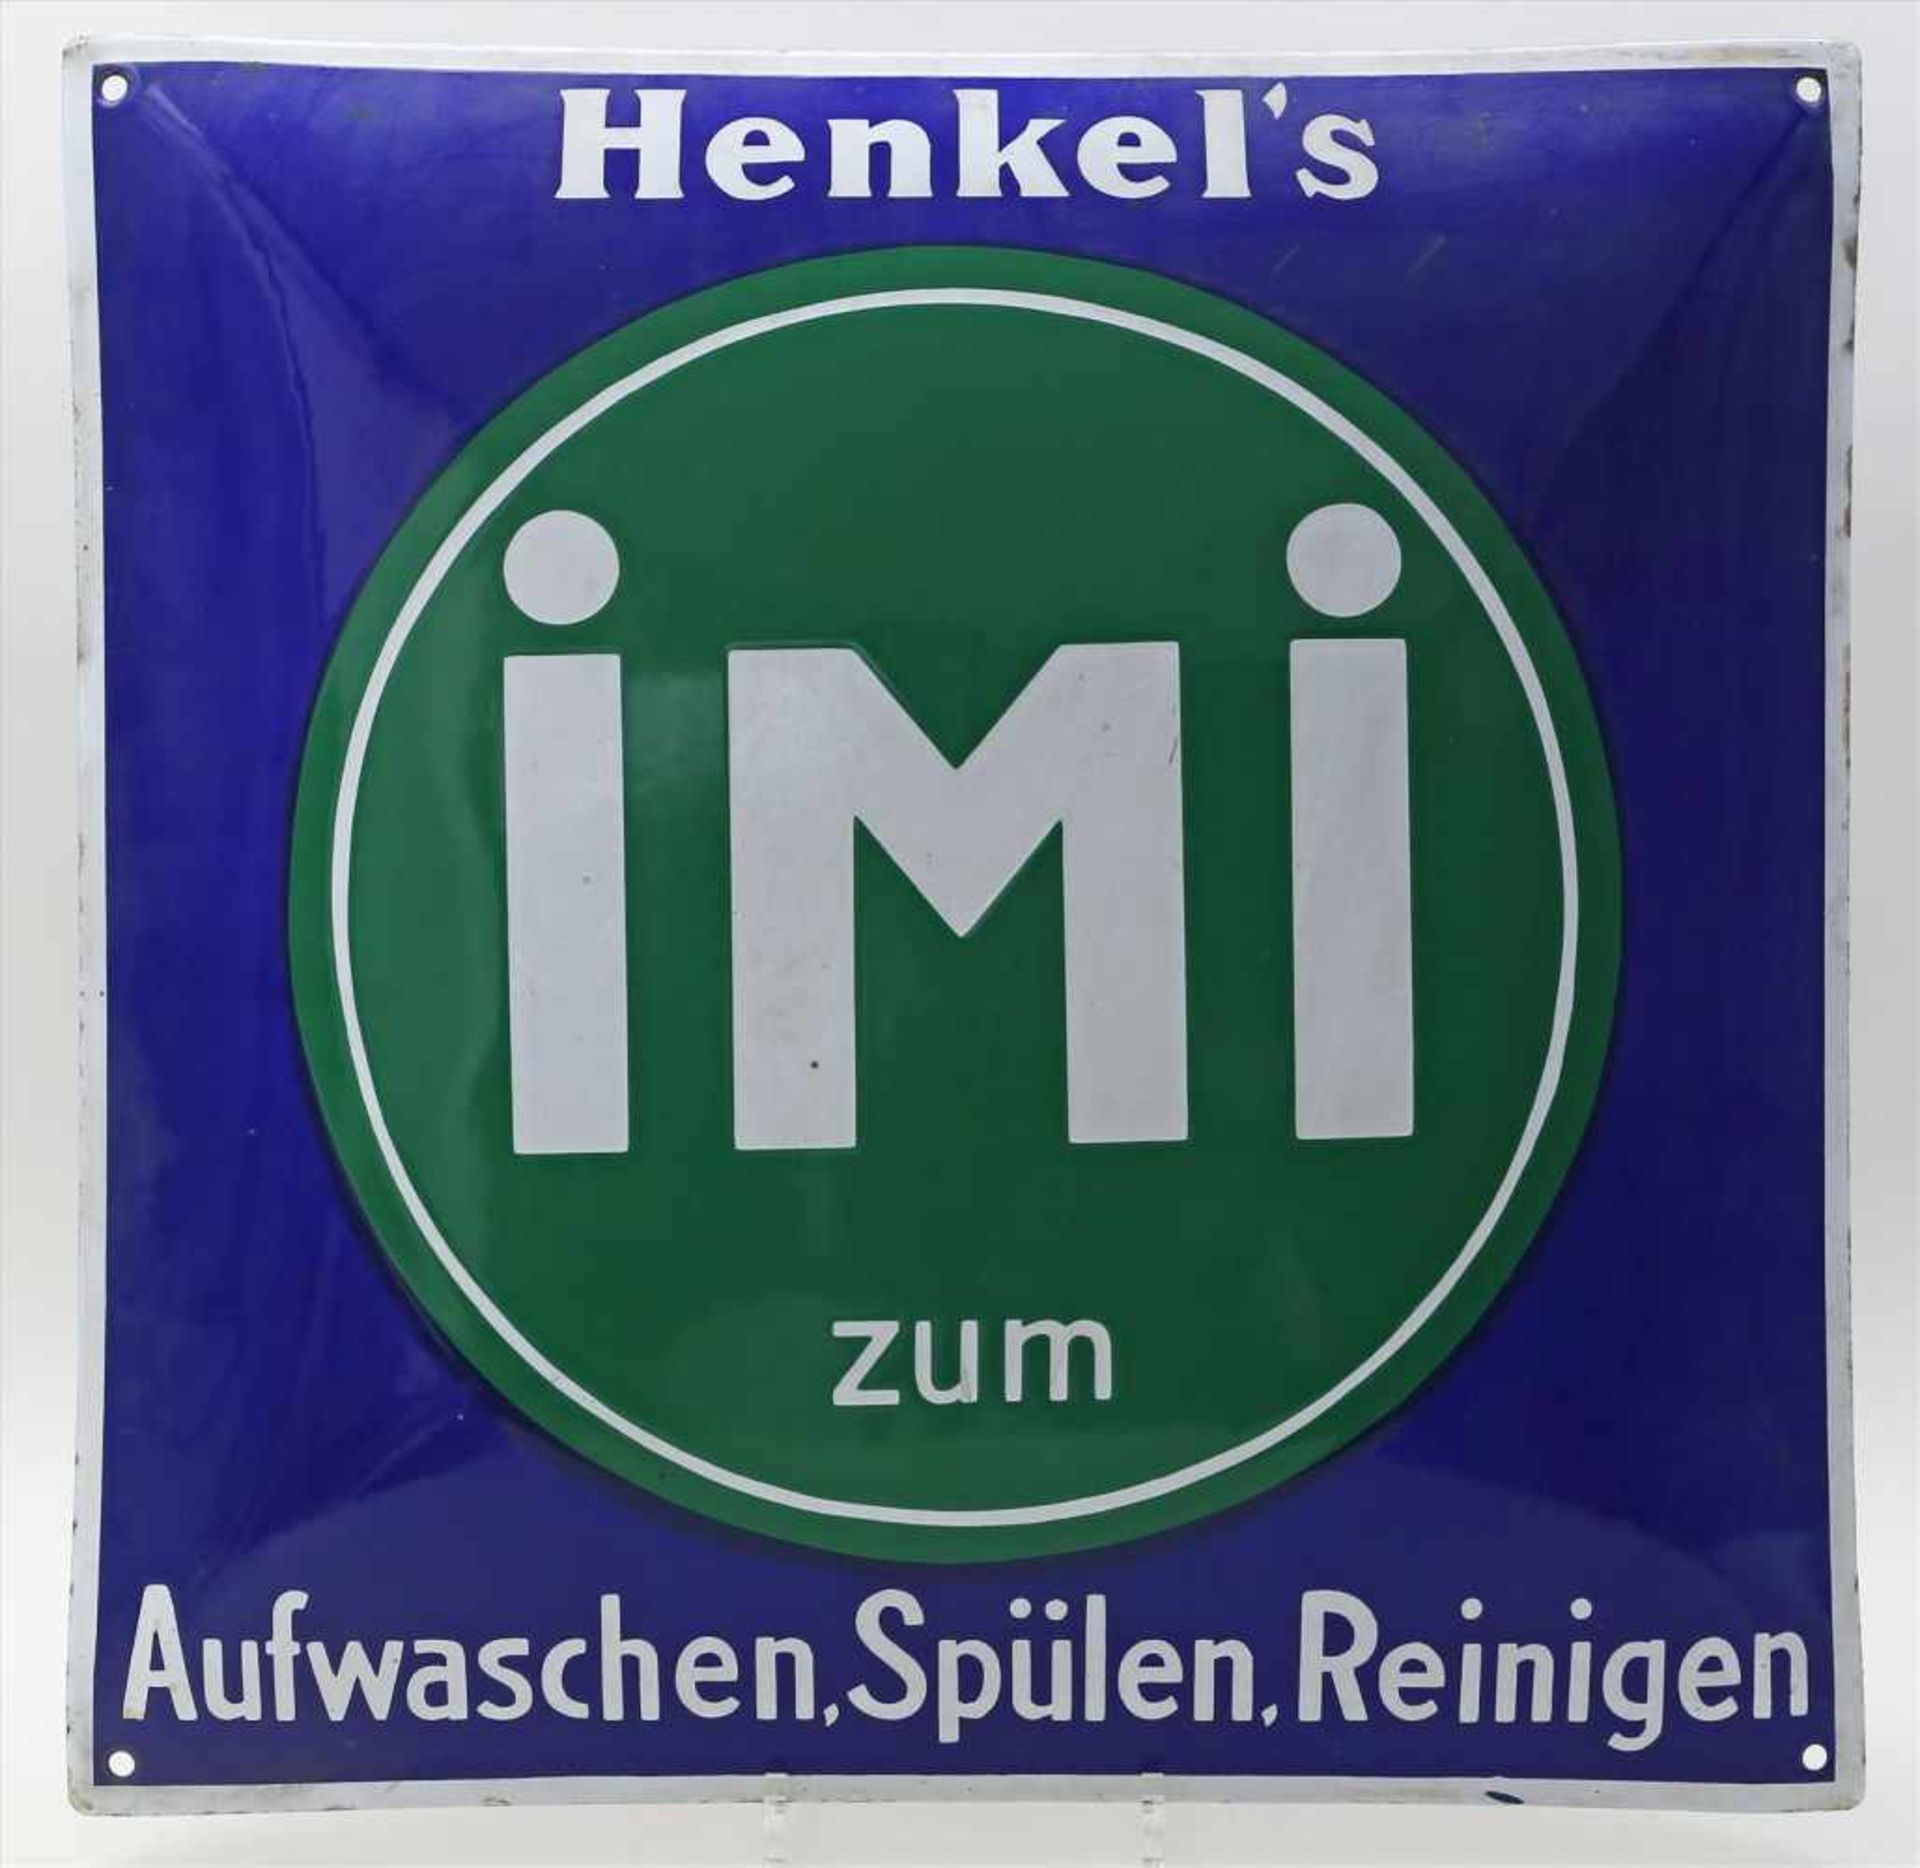 Emailschild "Henkel's iMi zum Aufwaschen, Spülen, Reinigen".<